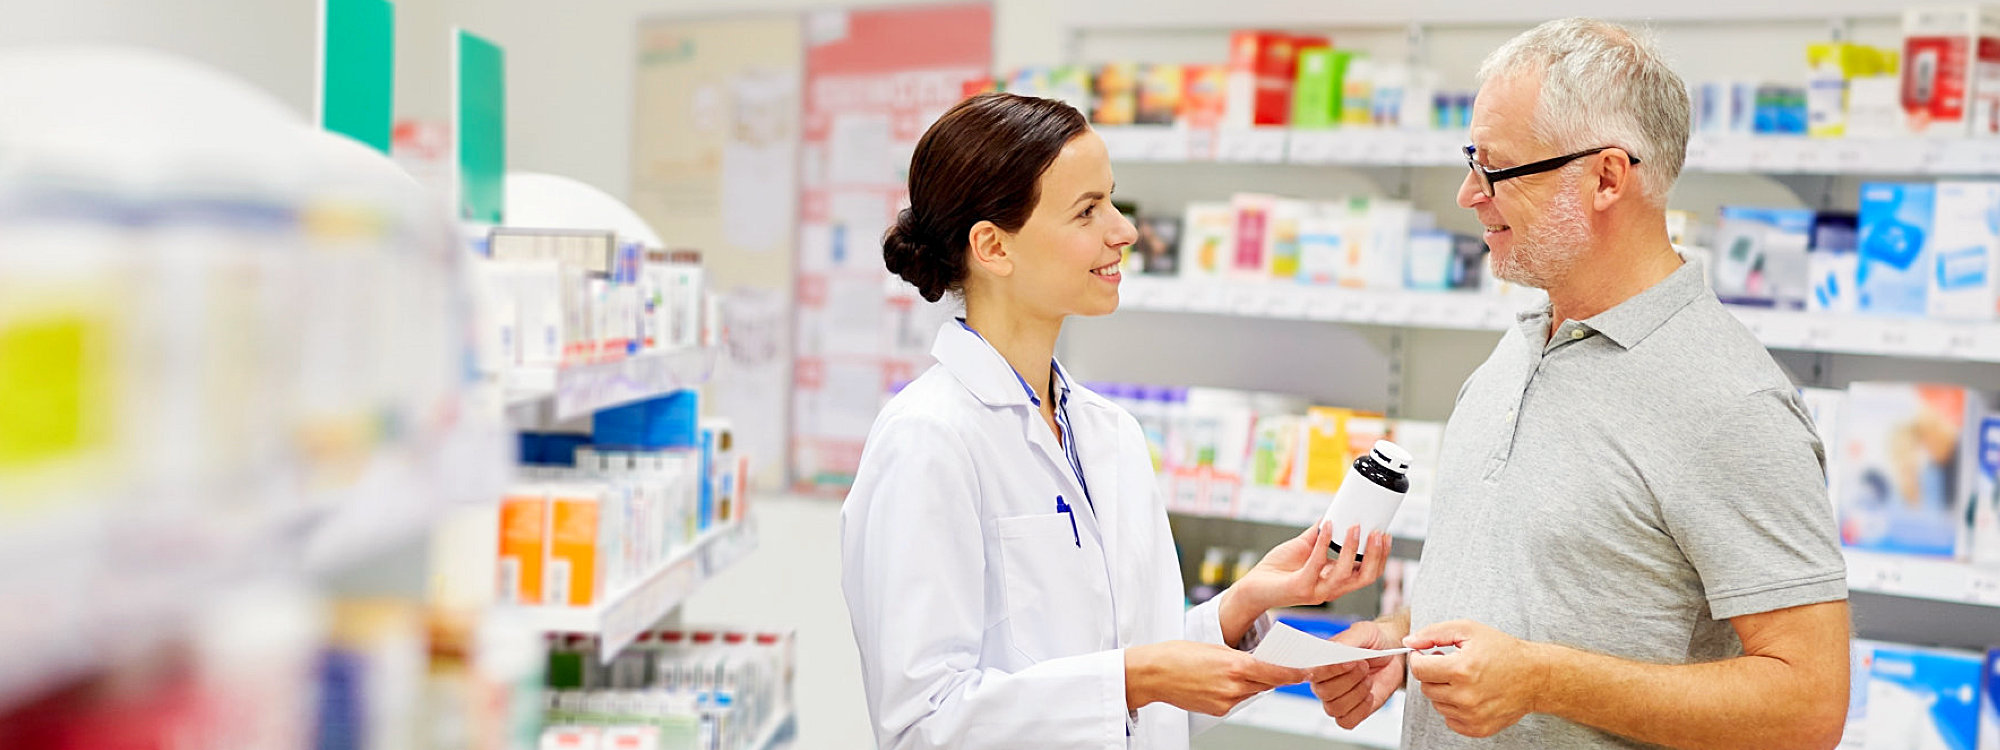 pharmacist giving customer meds with prescription